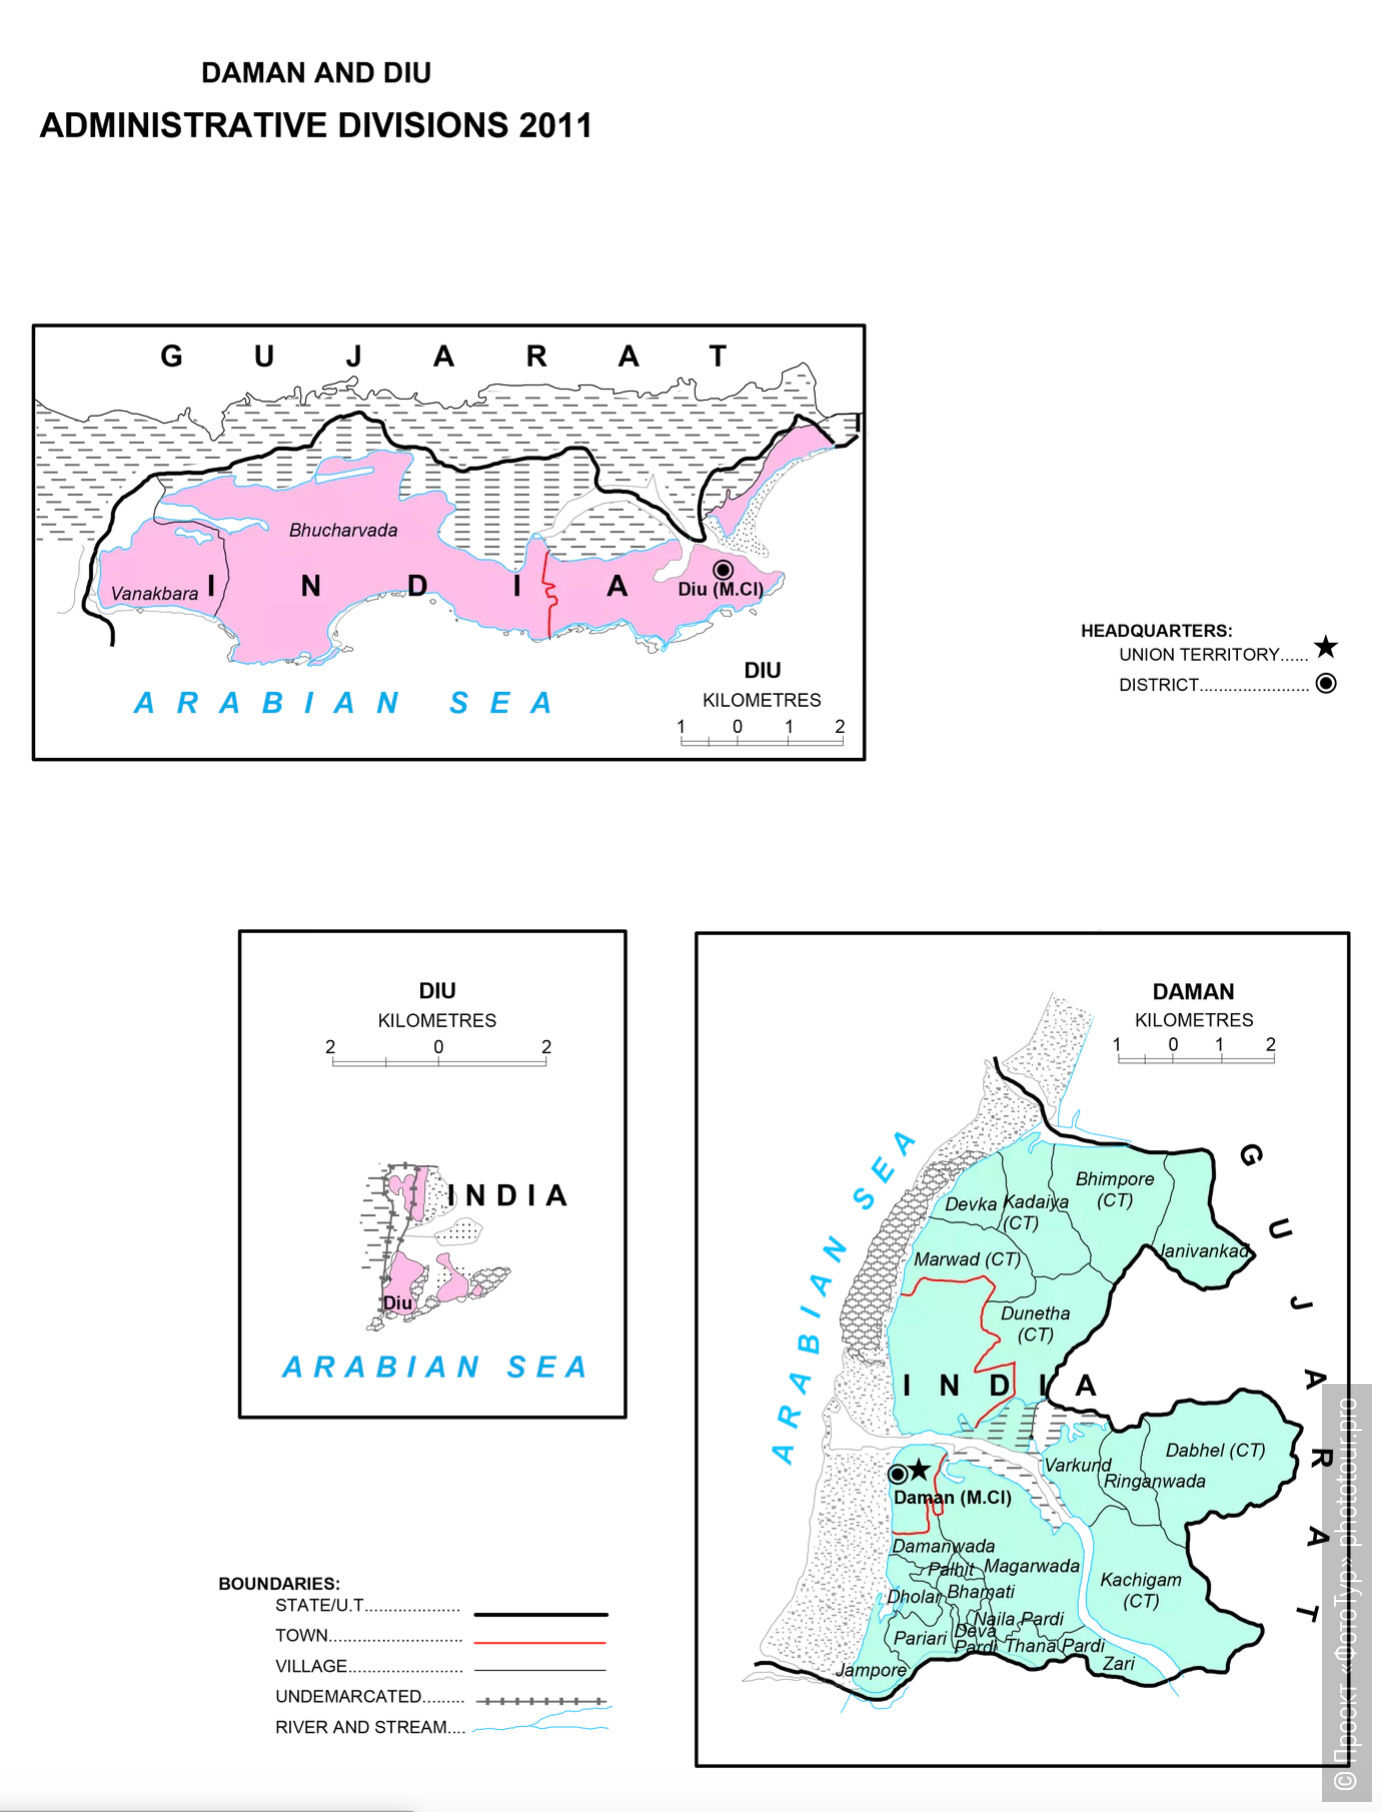 Карта союзной территории Даман и Диу.